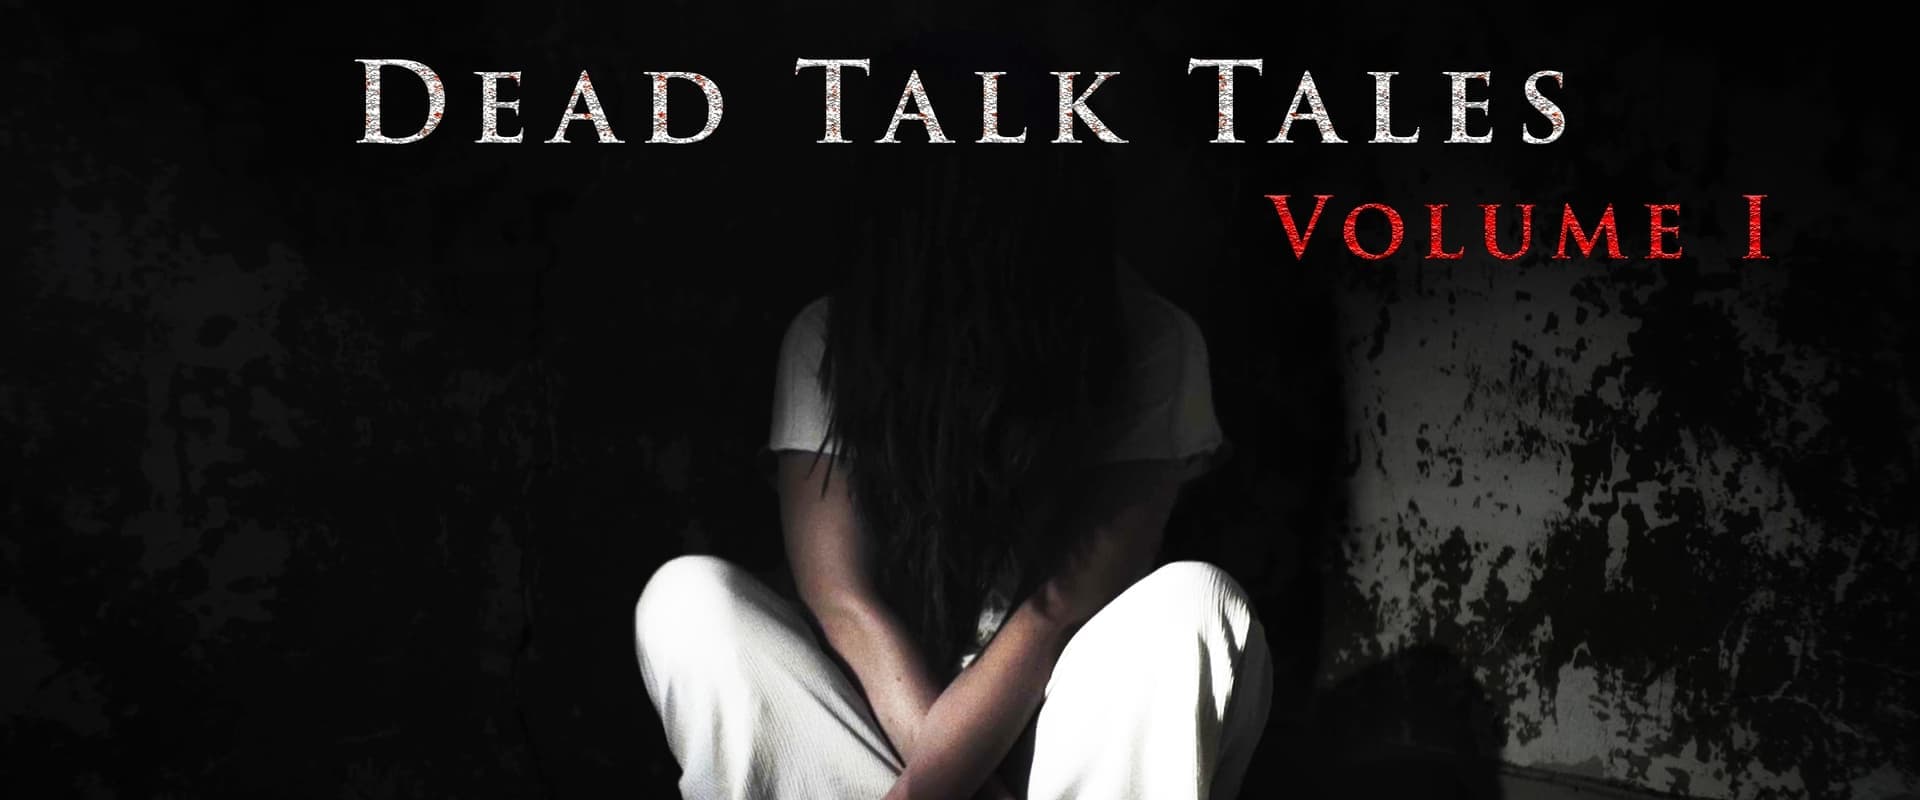 Dead Talk Tales: Volume I